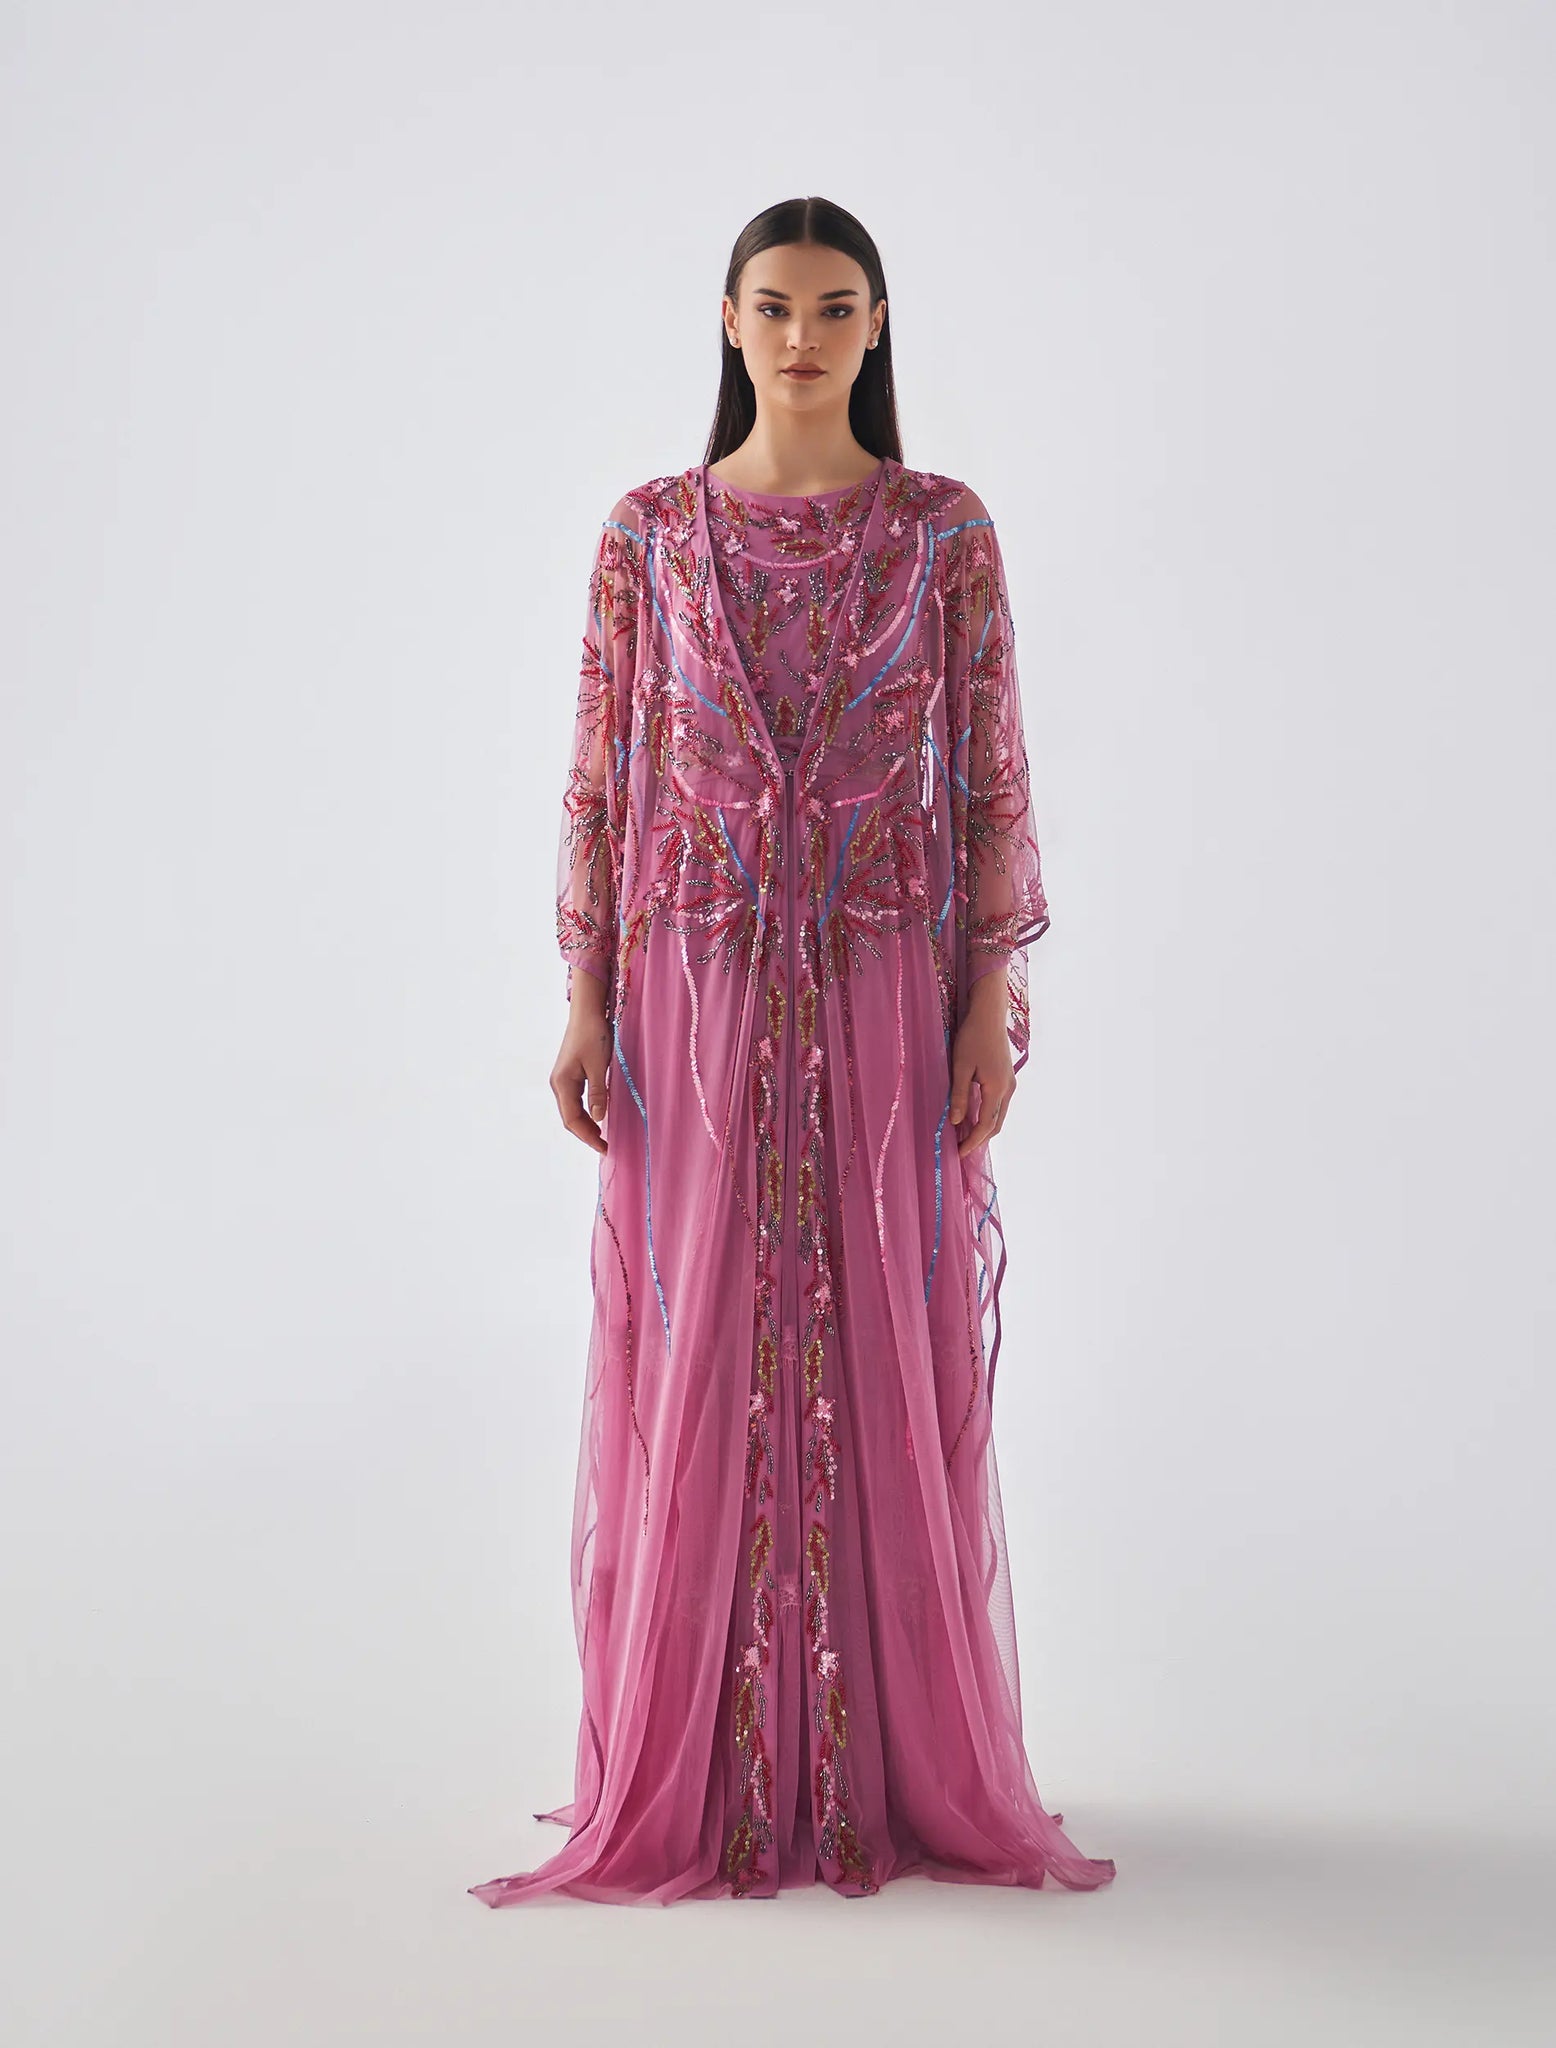 Iftikhar dress